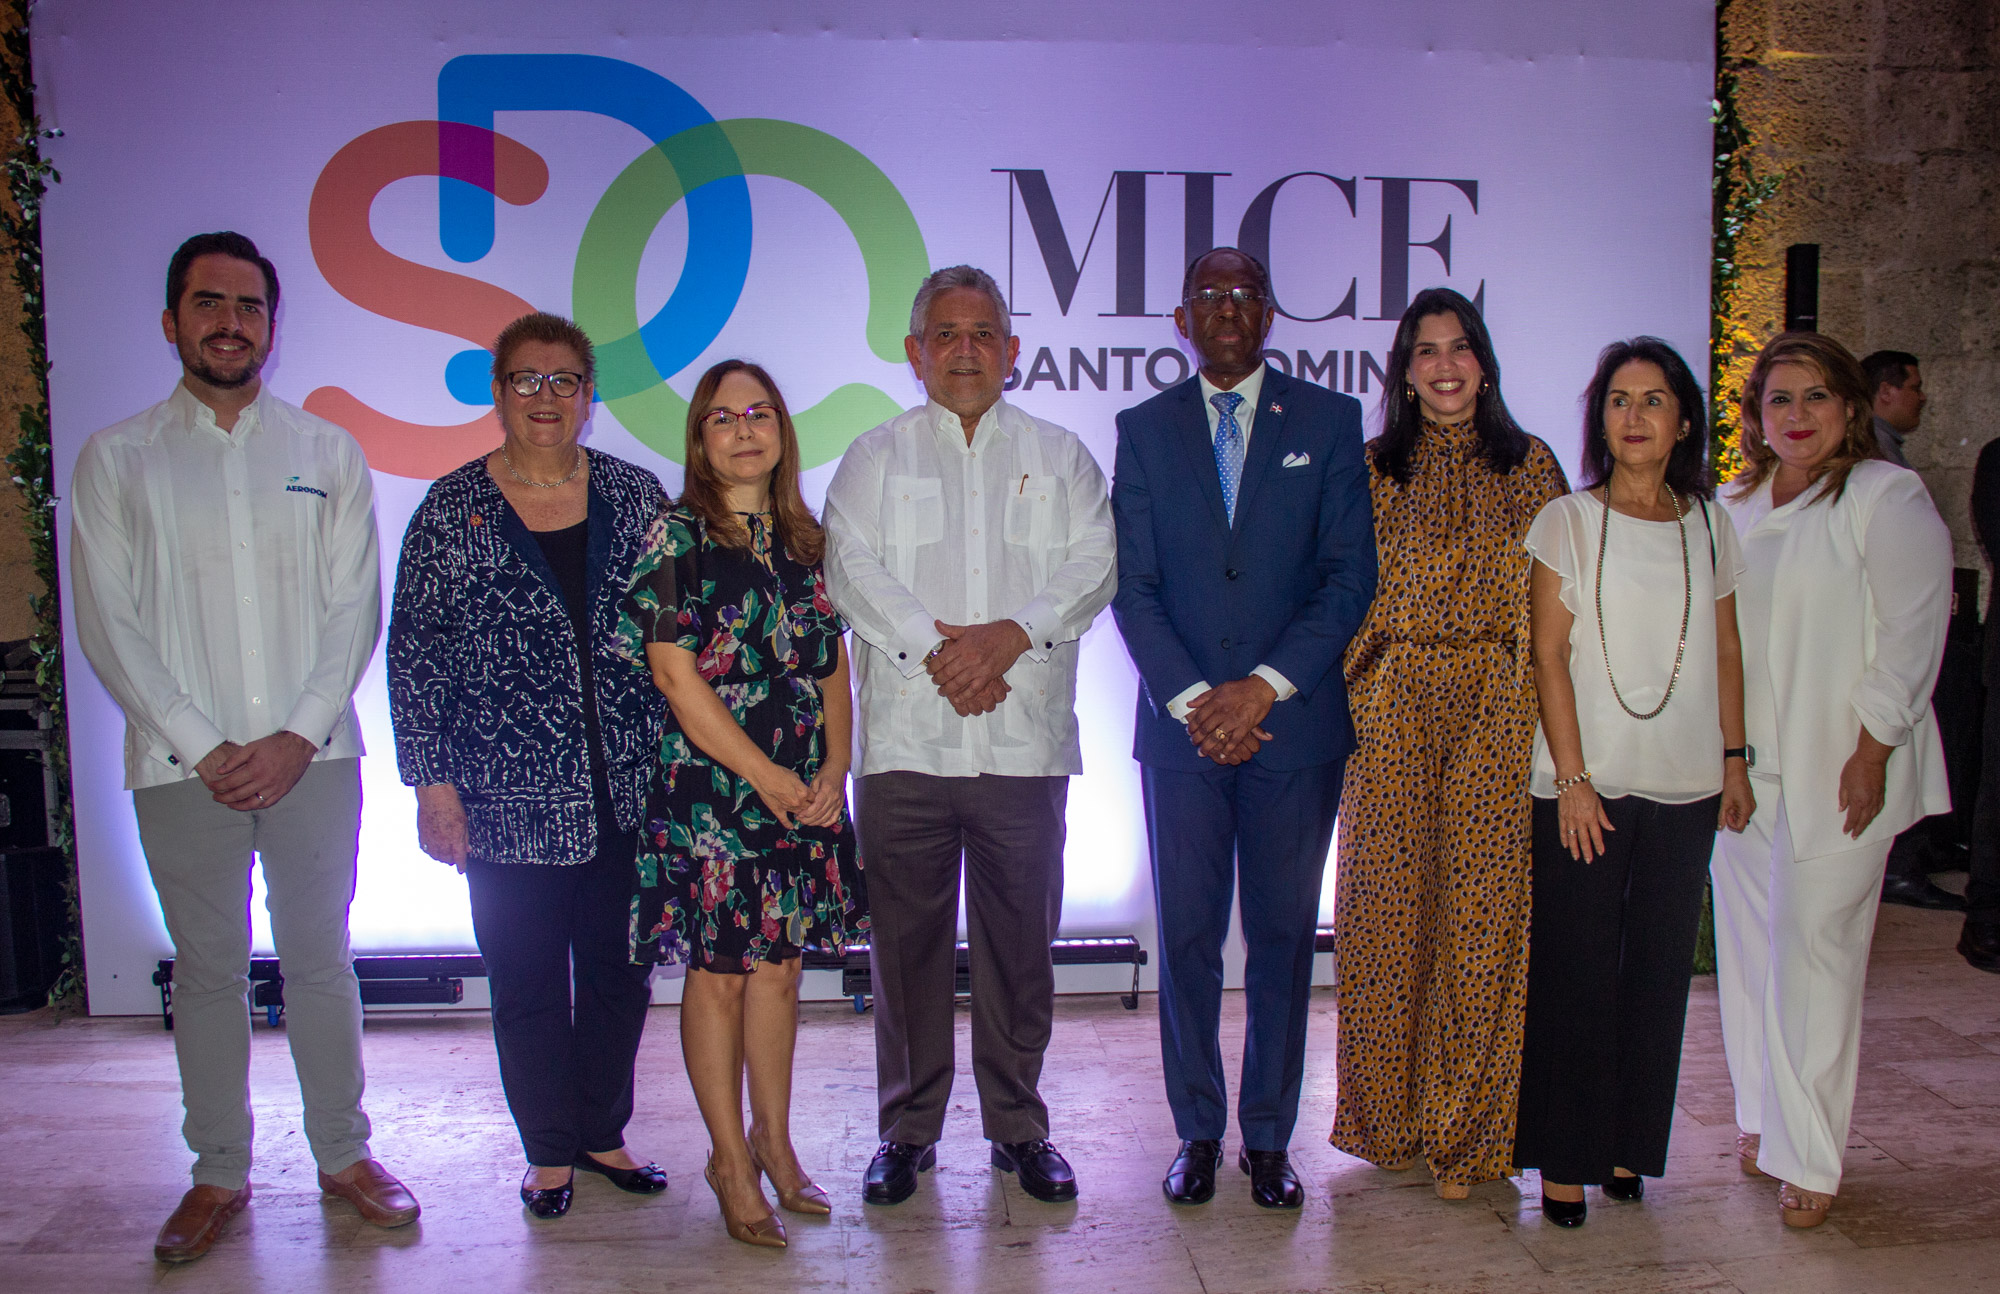 Santo Domingo impulsa turismo de congresos y reuniones con nueva edición de SDQ MICE